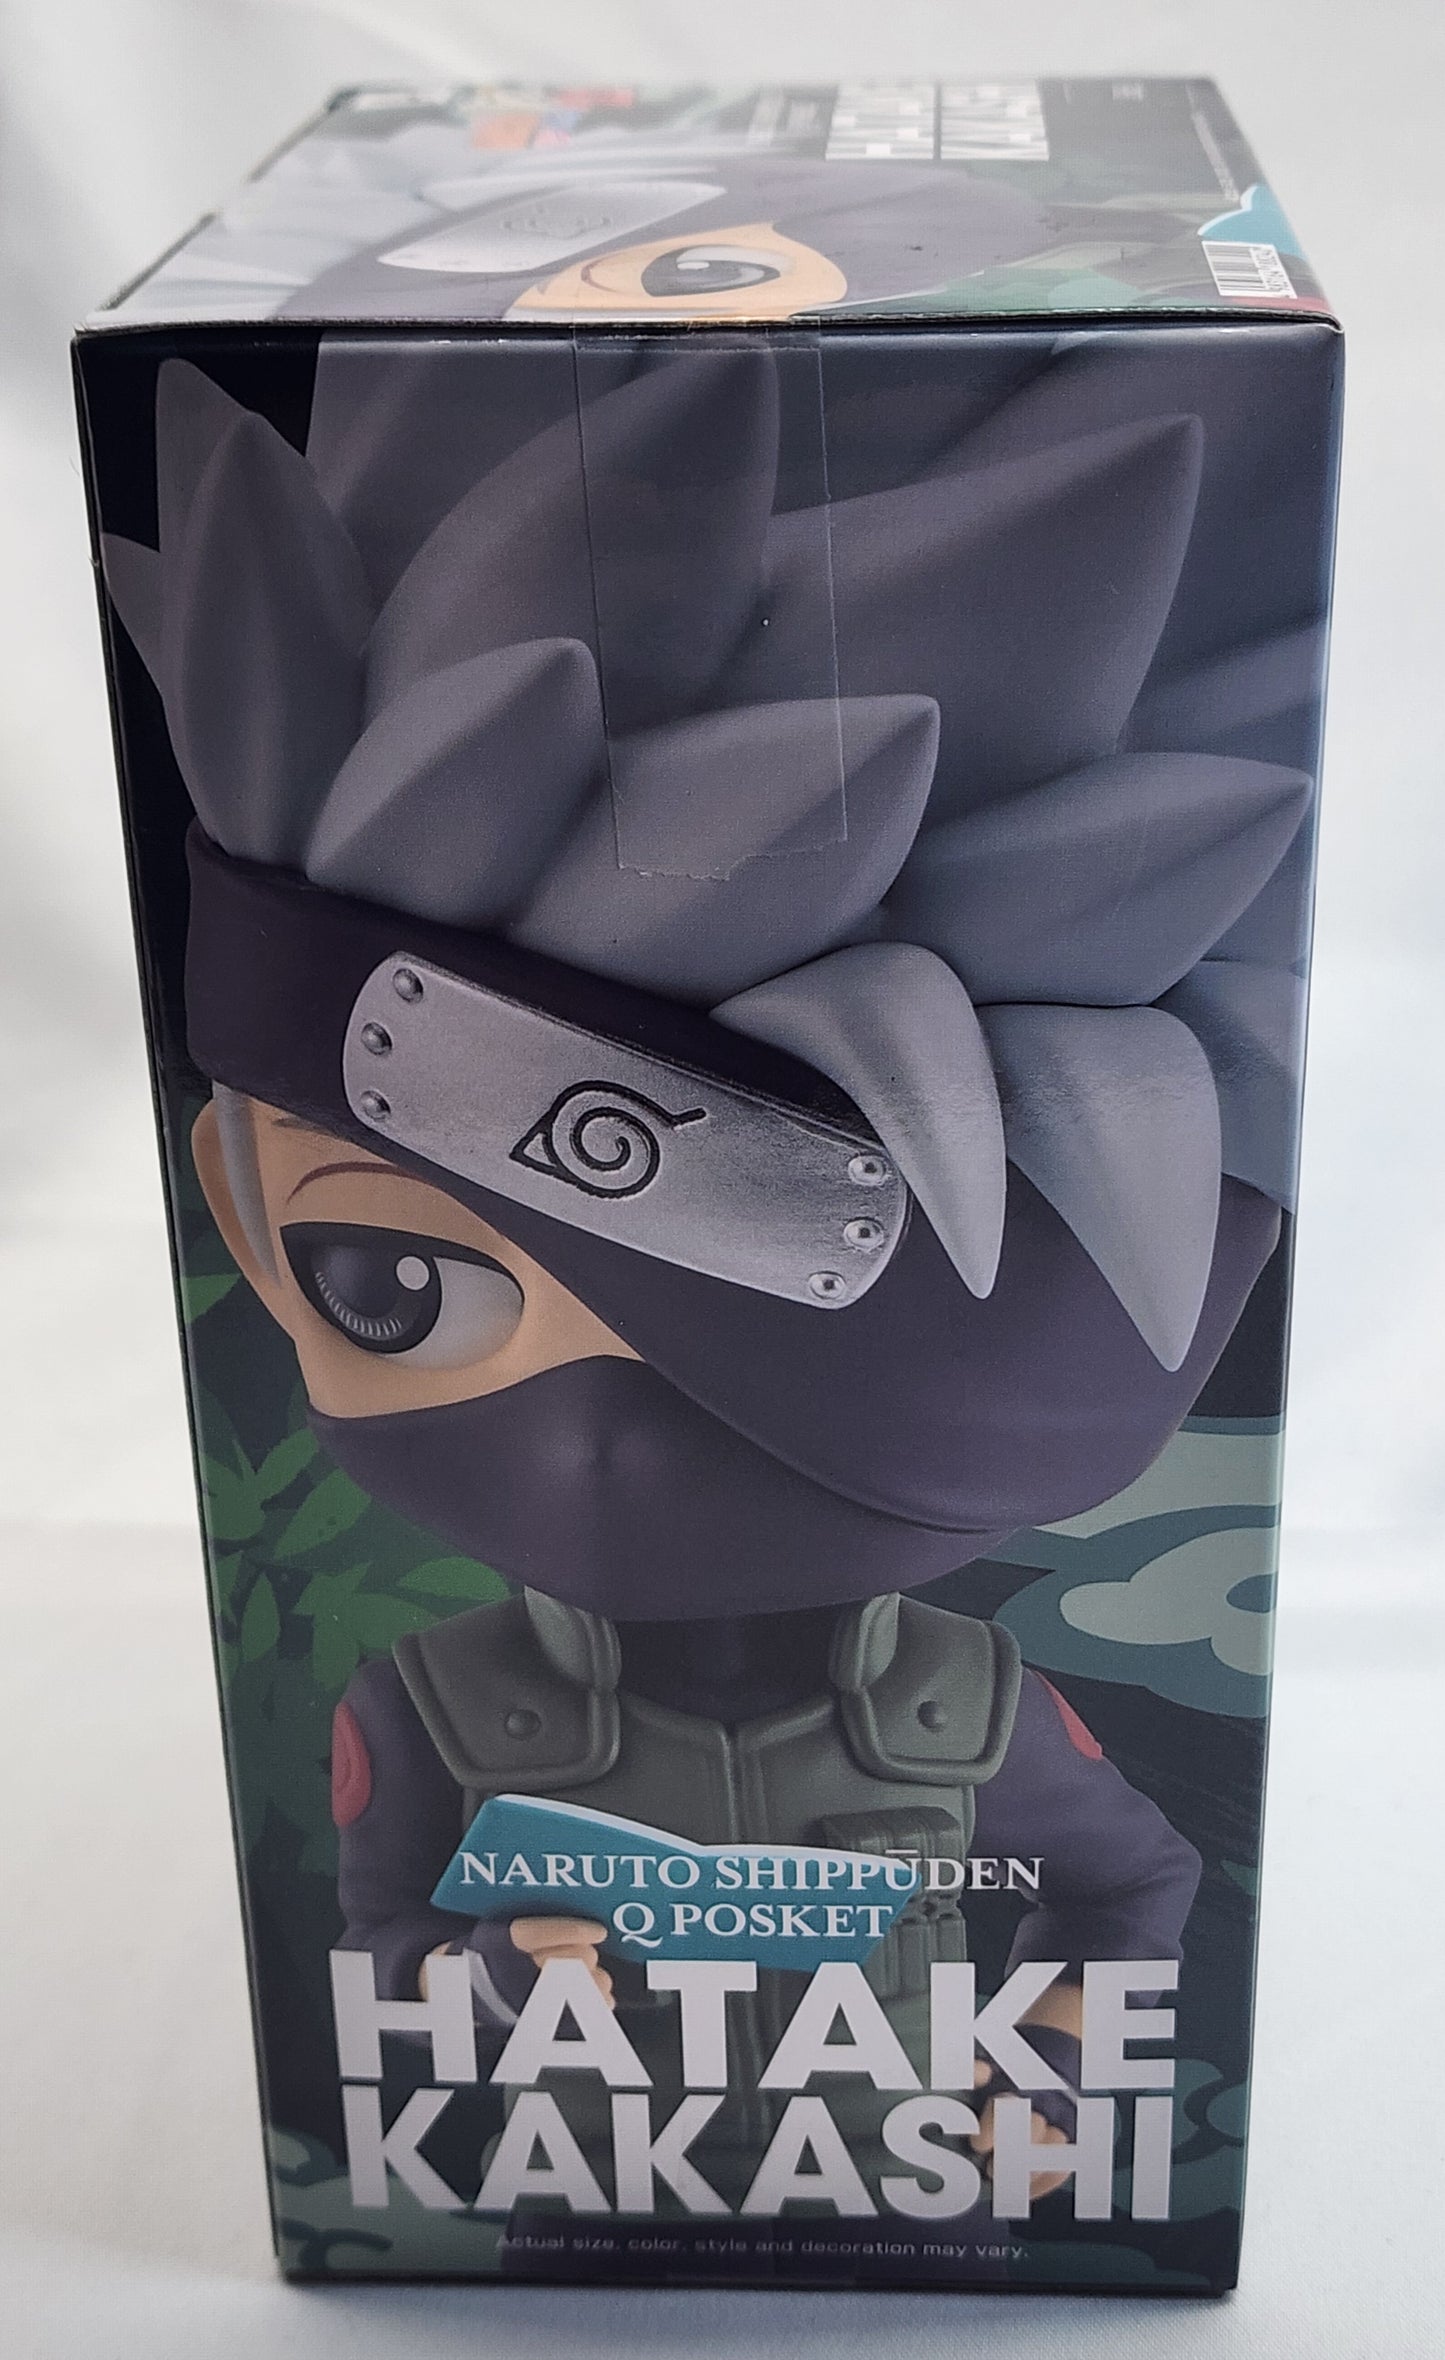 Naruto Shippuden QPosket. Hatake Kakashi. New!